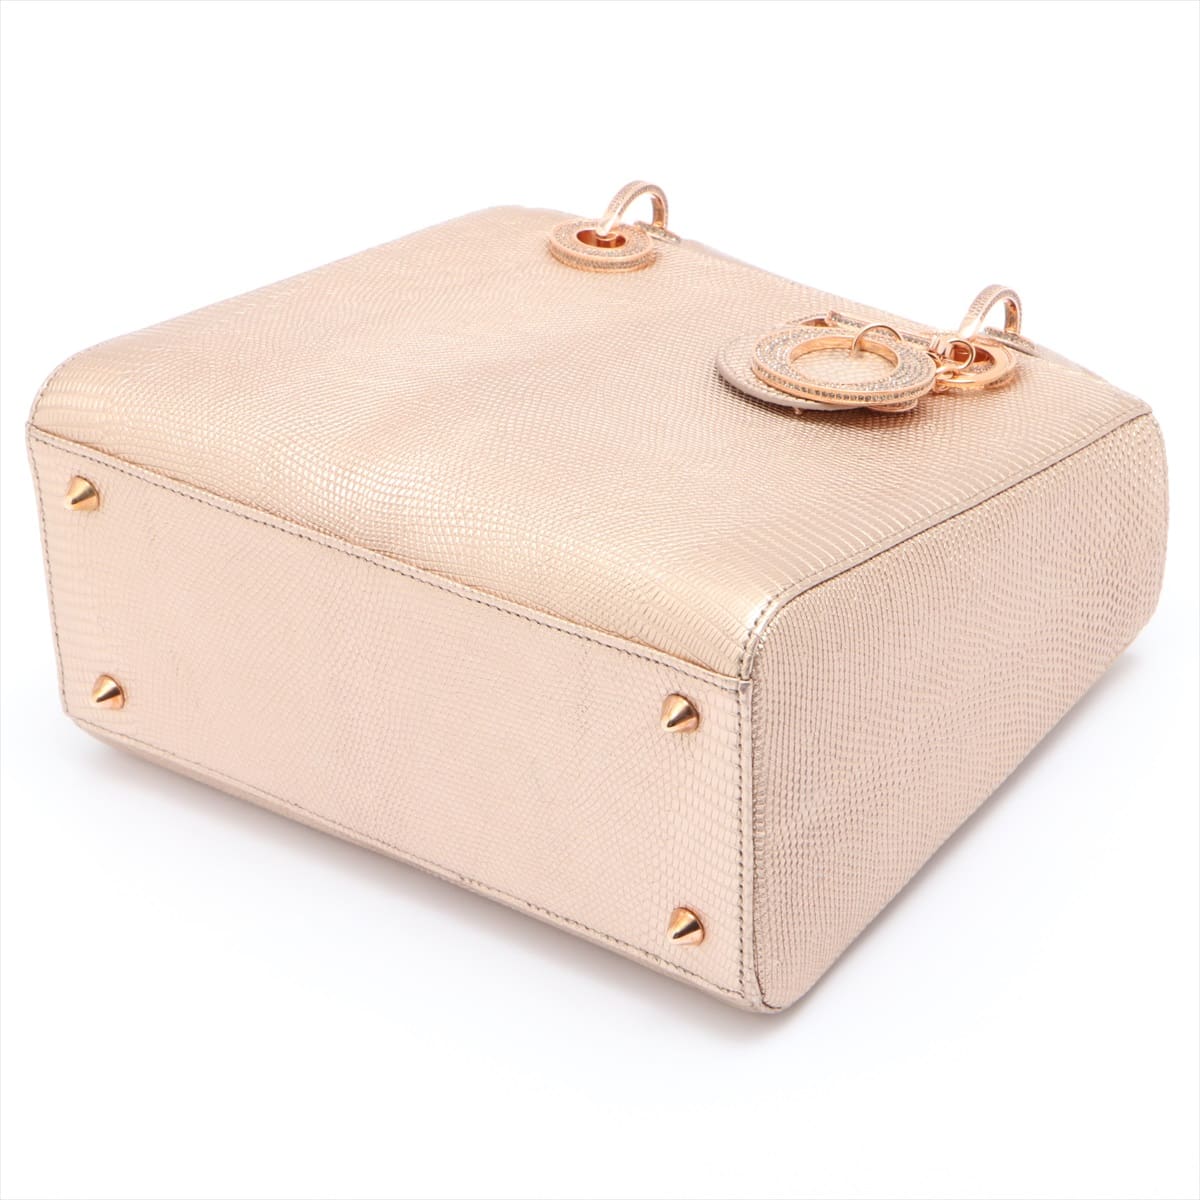 Christian Dior Lady Dior Lizard 2way handbag Gold with rhinestones